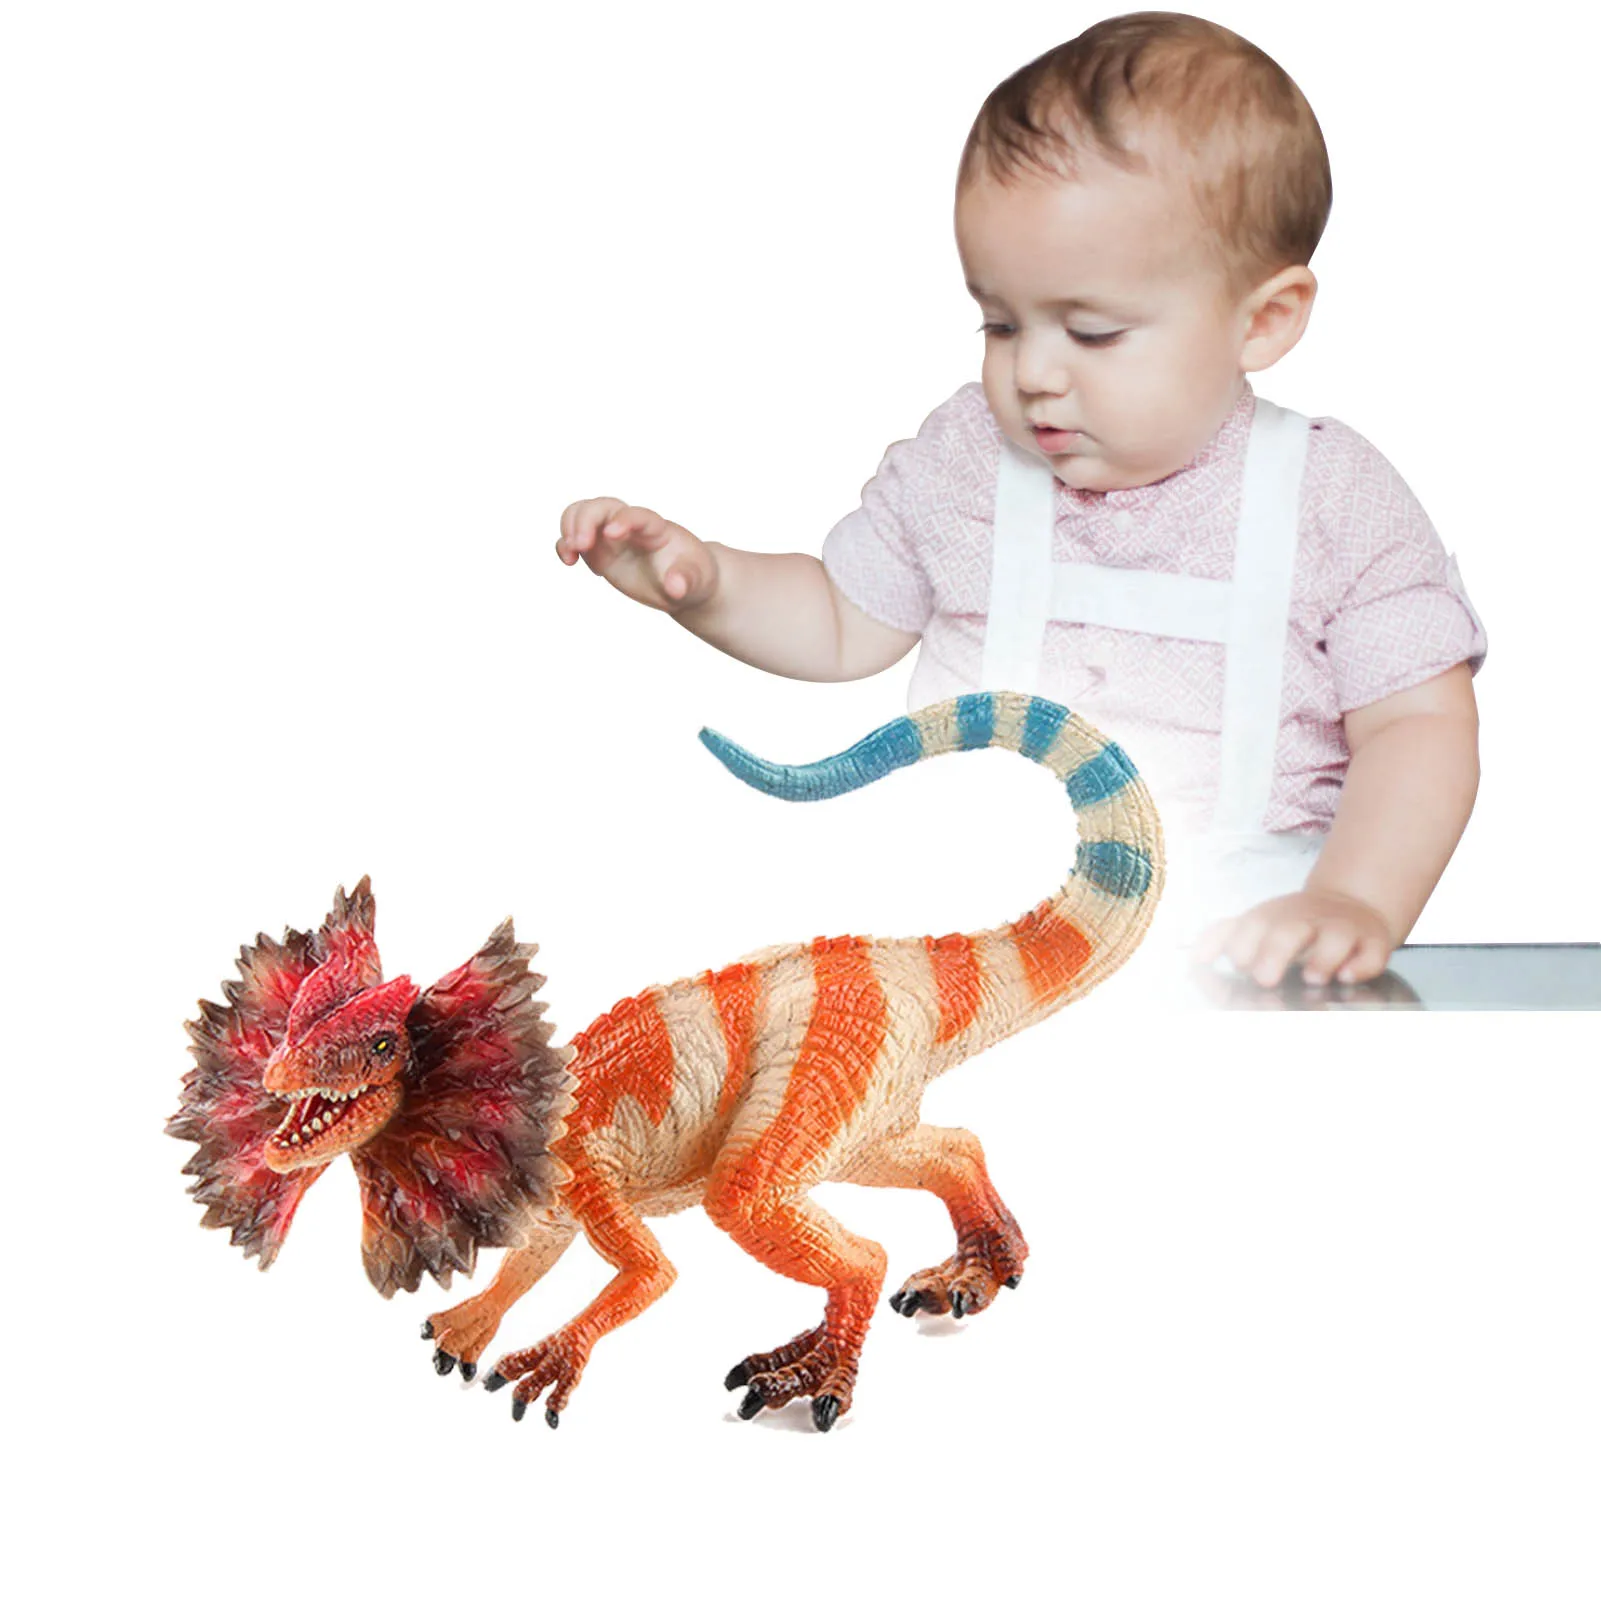 

Игрушки-Динозавры для детей, реалистичные фигурки динозавров, обучающая игрушка, модель динозавра, игрушки для детей, подарки на день рожде...